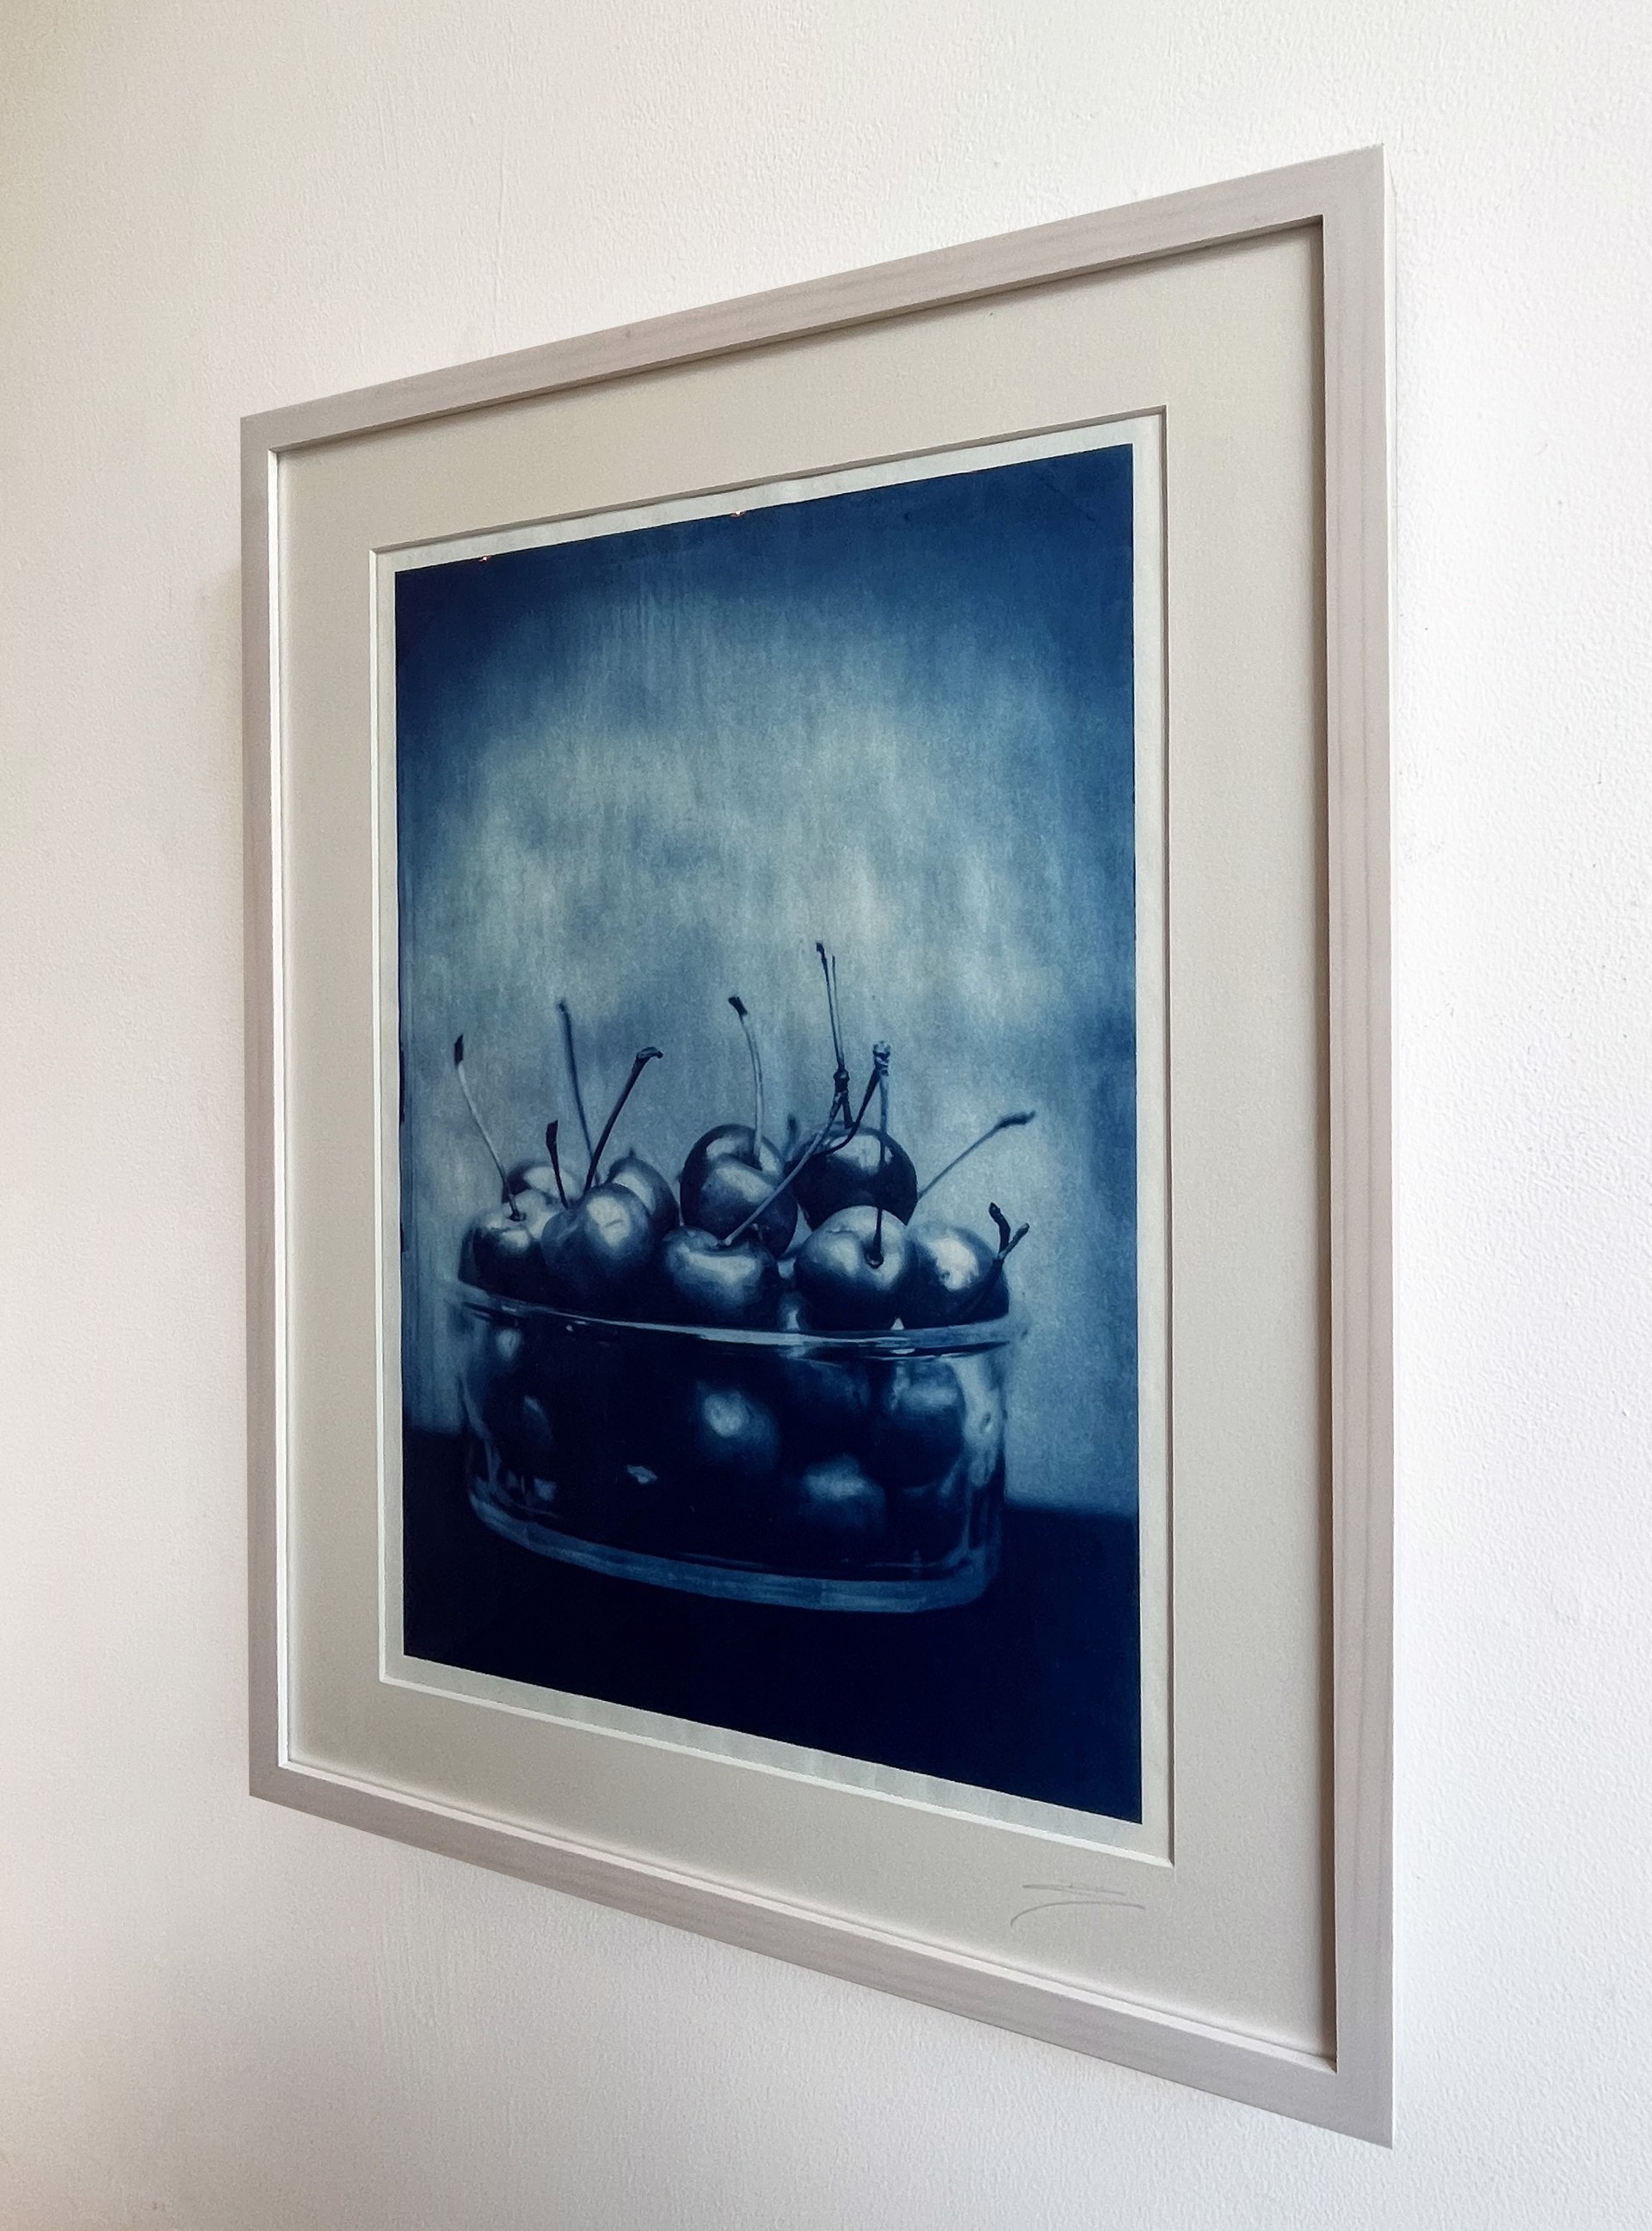 Bowl of Cherries by David Sokosh